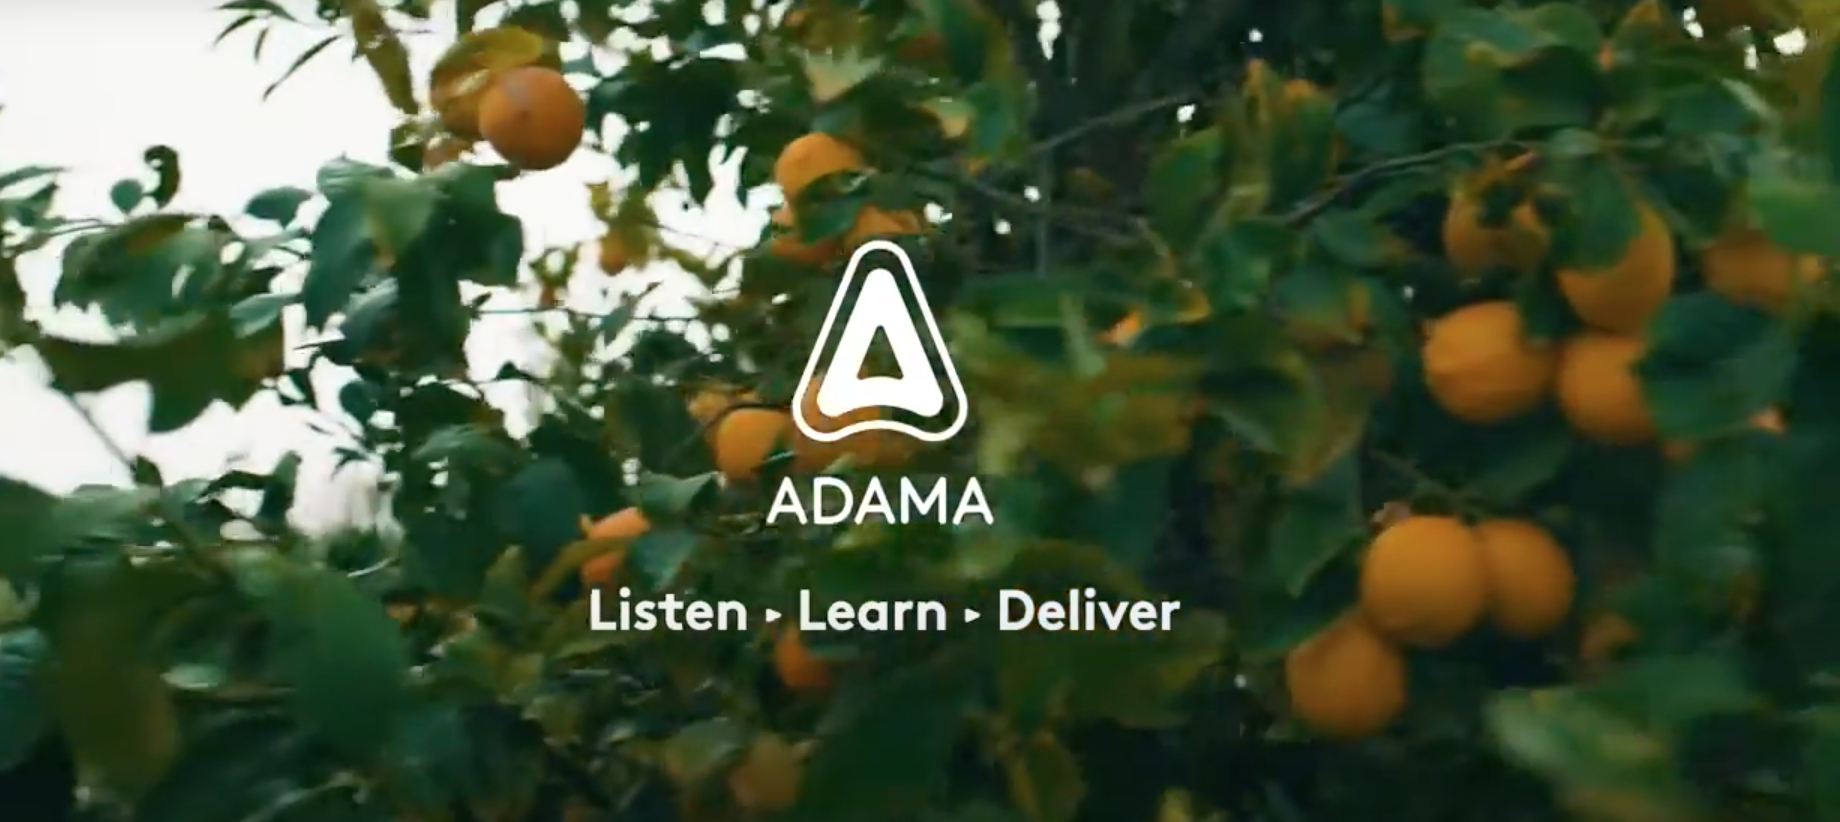 Adama, hecho por todos